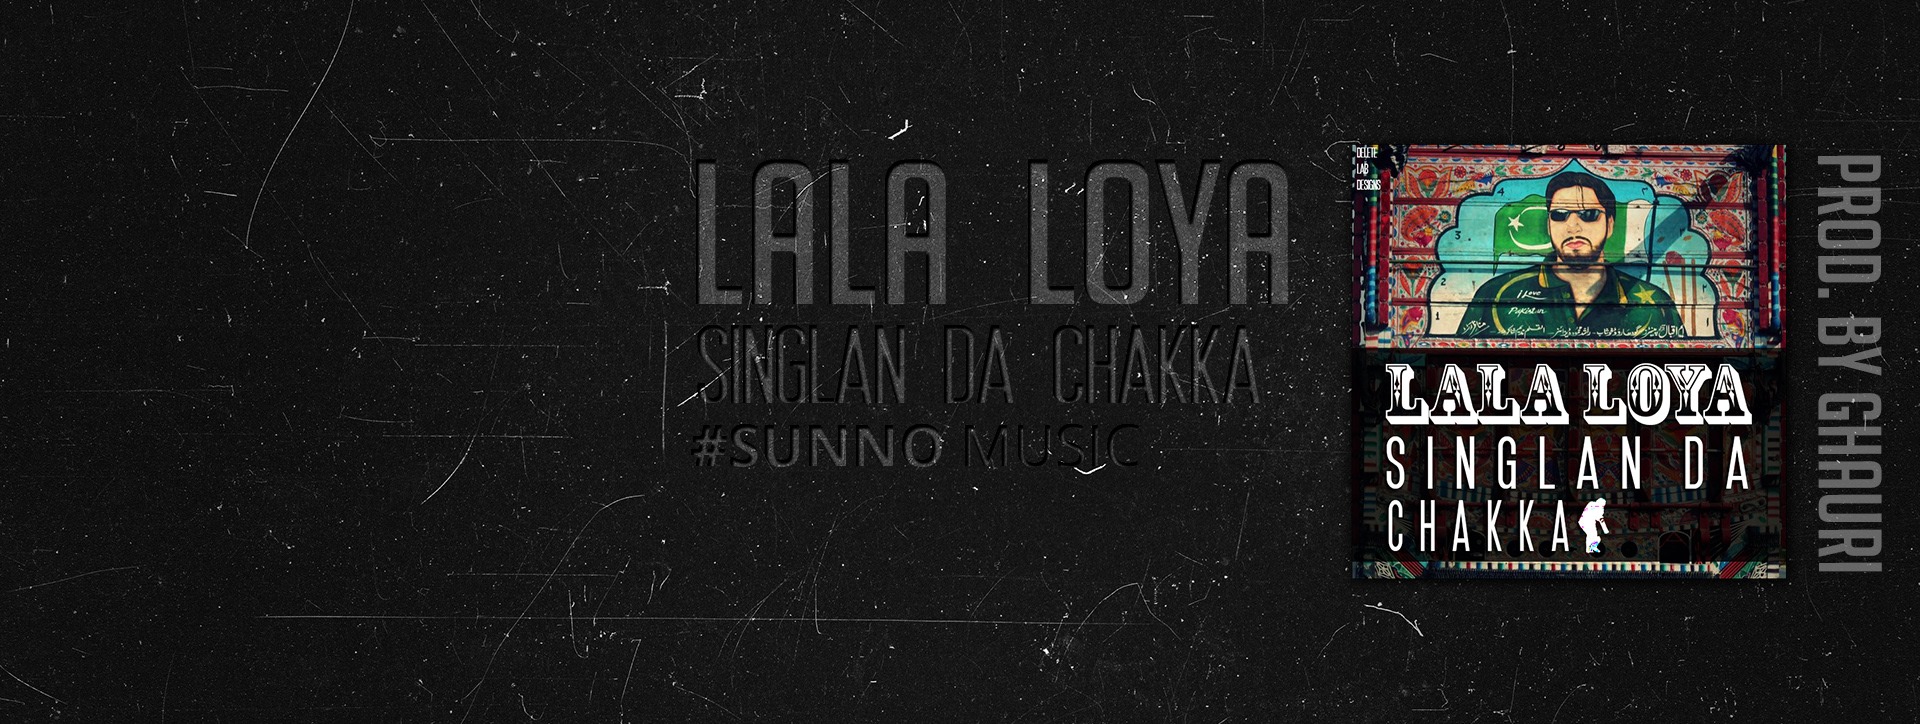 lala loya ghauri singlan da chakka sunno music